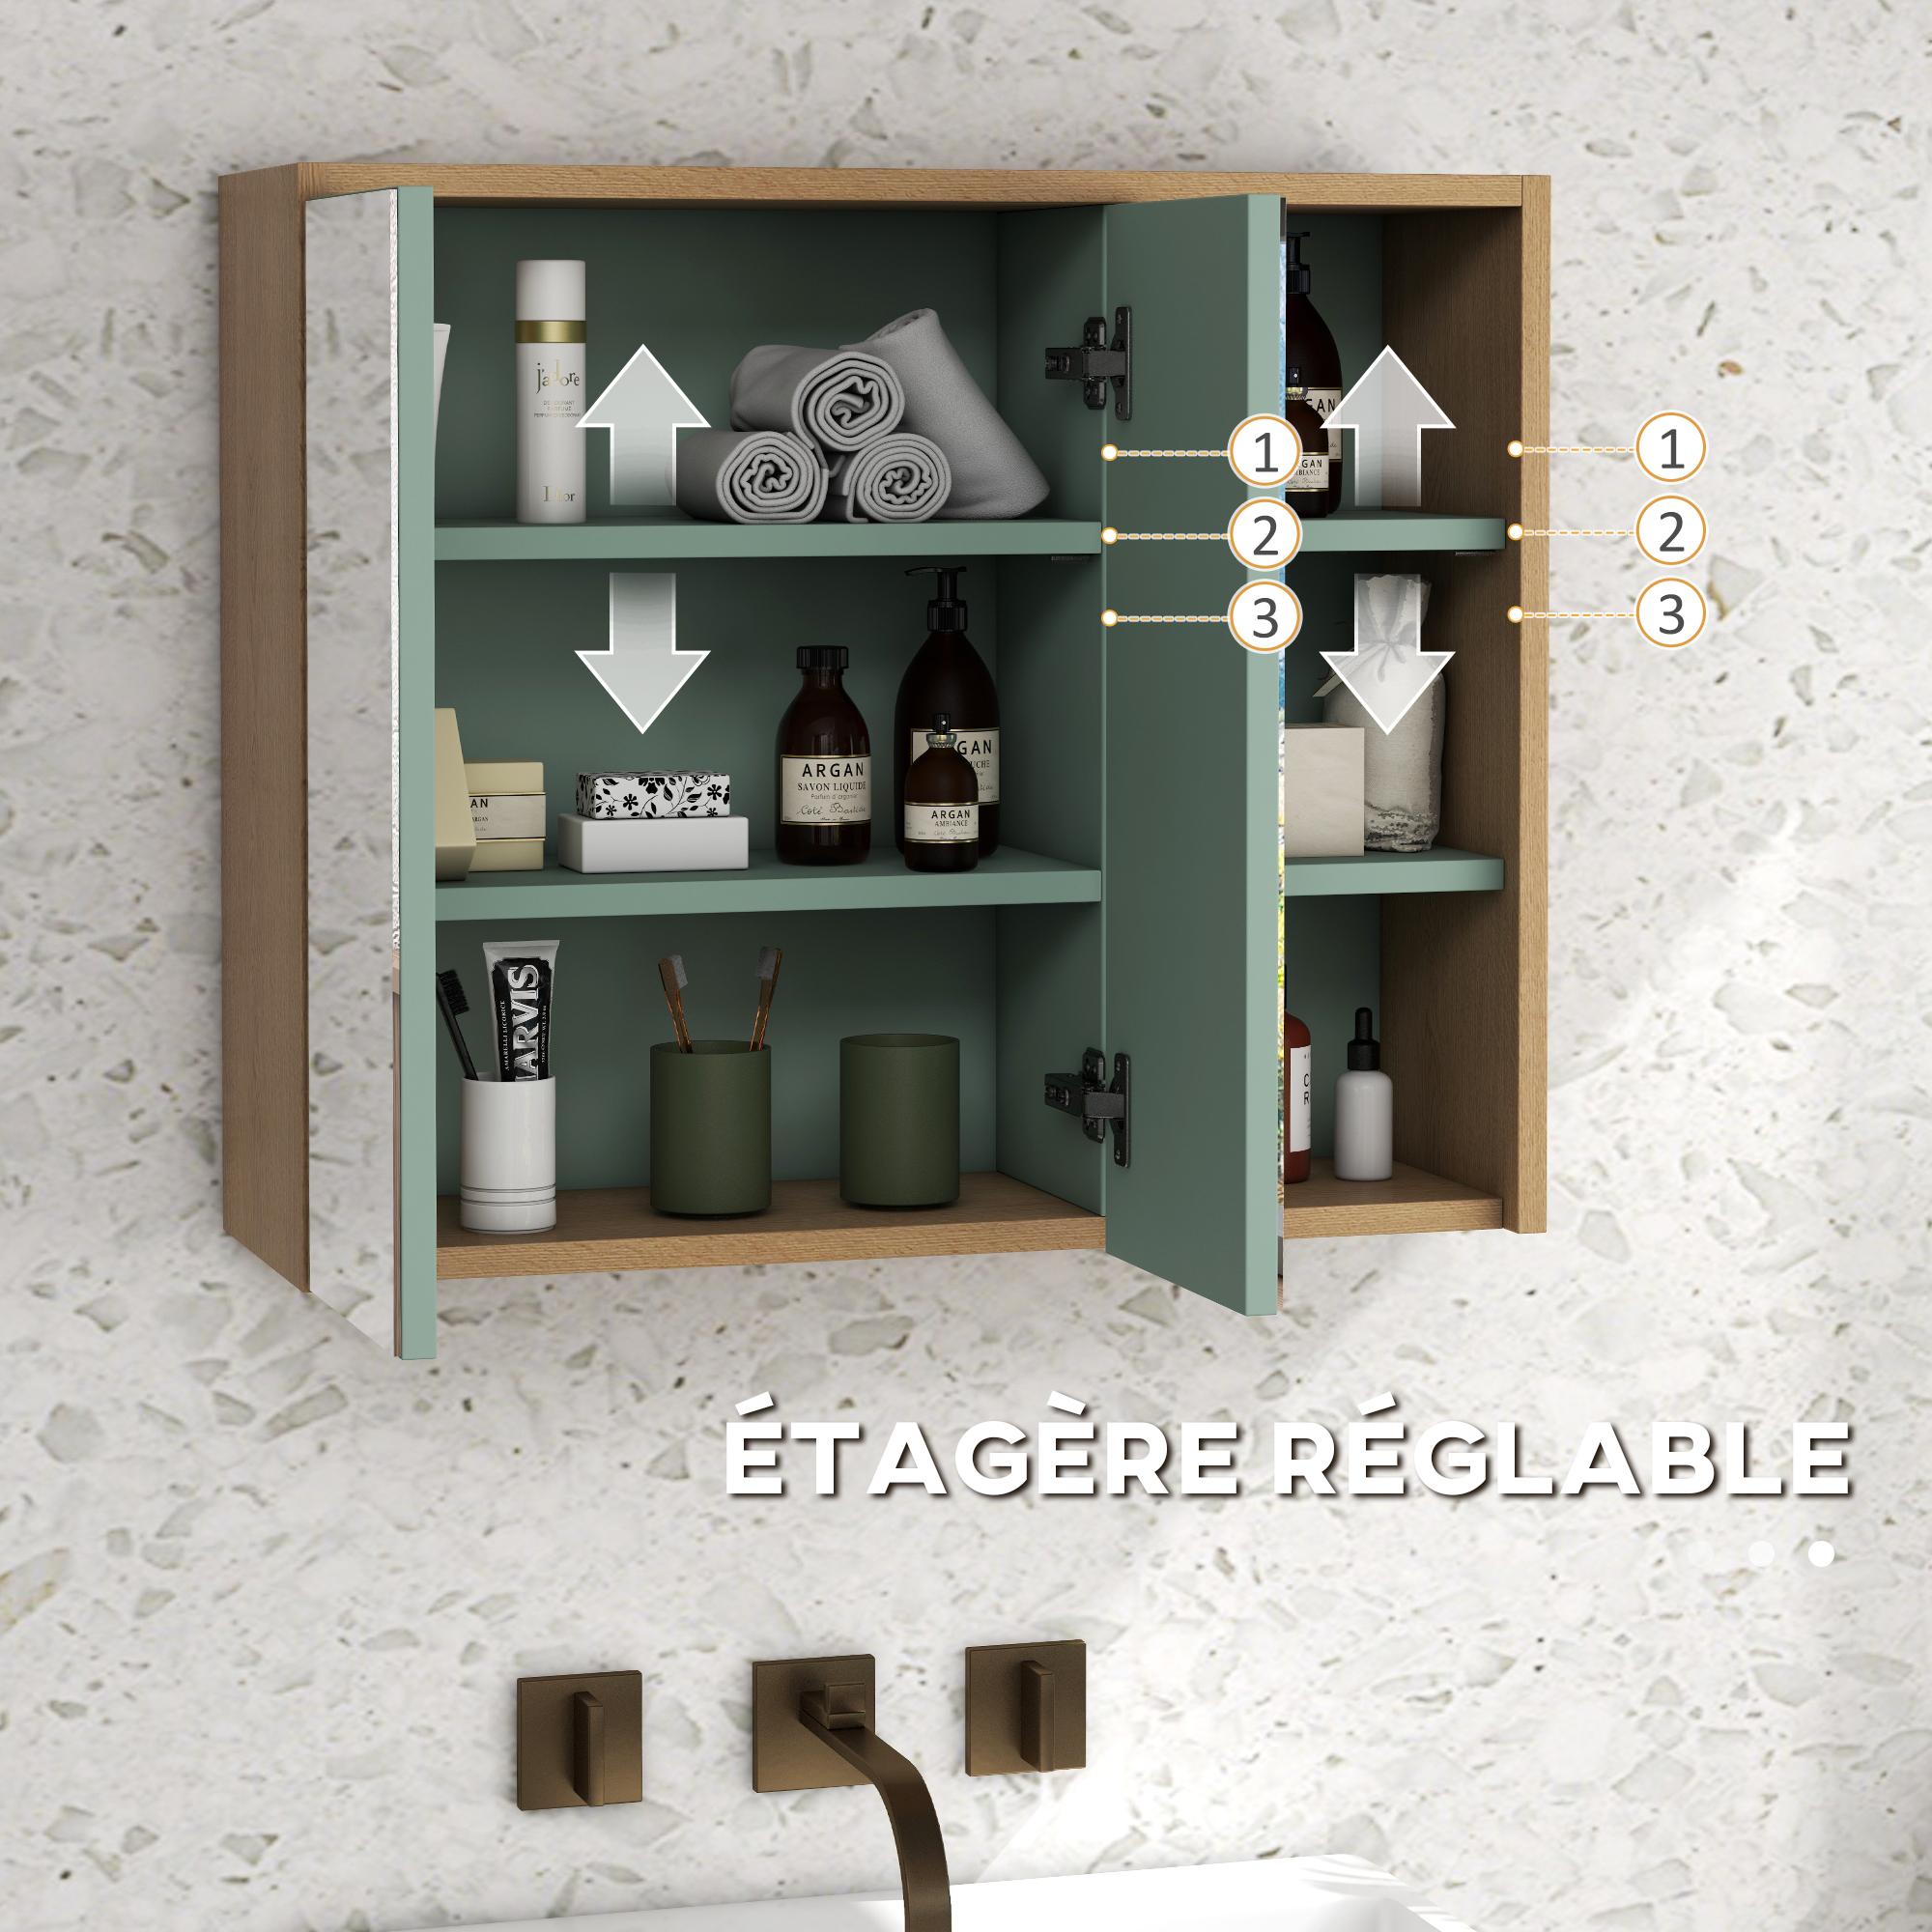 Ensemble 2 meubles salle de bain - meuble sous-vasque suspendu, armoire murale miroir - aspect bois clair vert